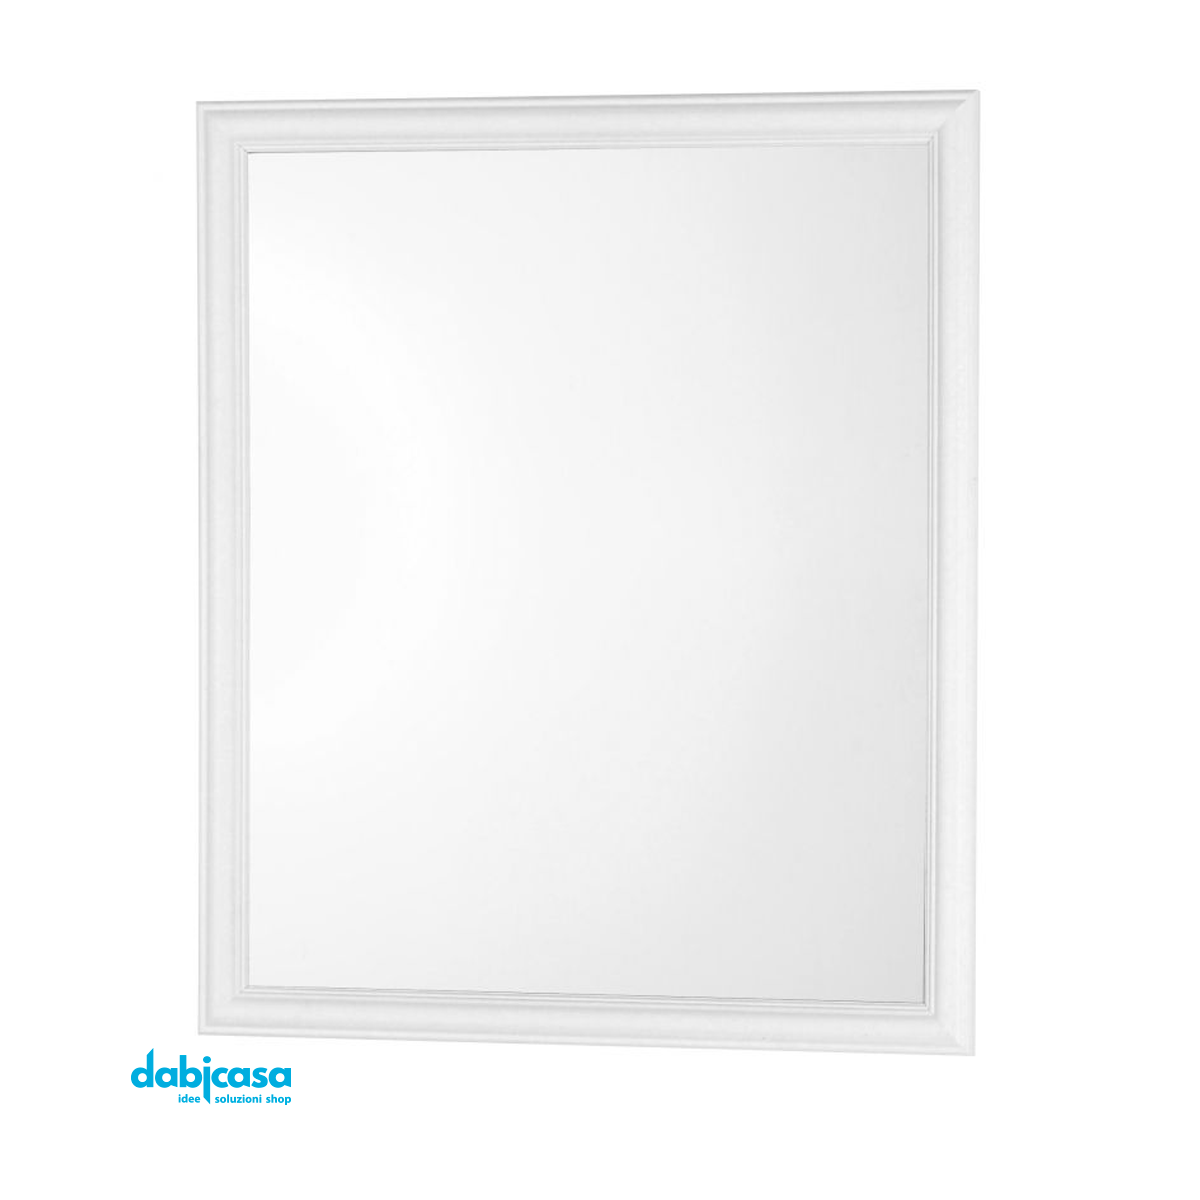 Specchio "Linea White" Con Cornice Colore Bianco in ABS 50x60cm freeshipping - Dabicasa